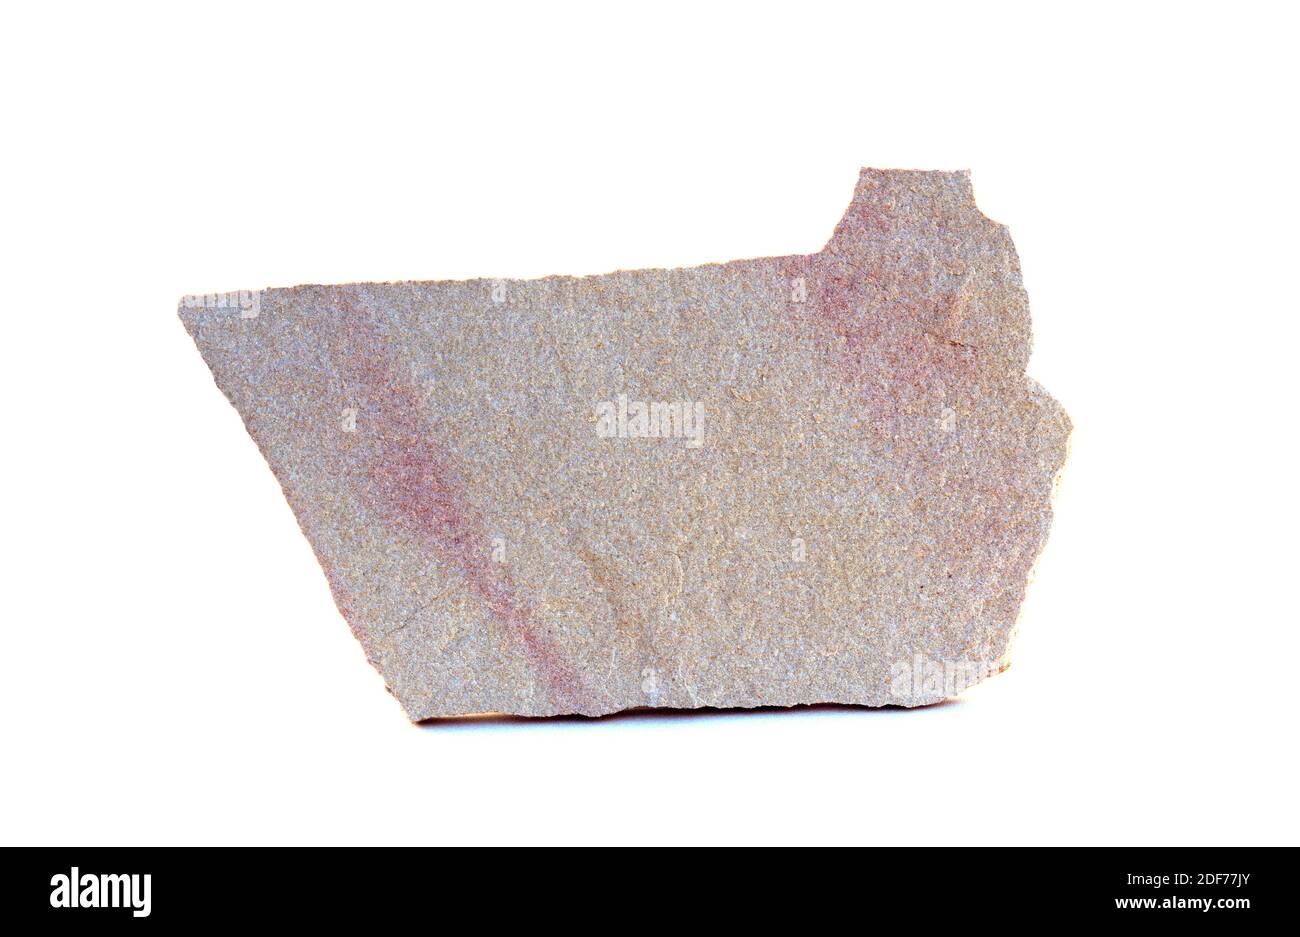 Kalkstein ist ein Sedimentgestein, das hauptsächlich aus Calciumcarbonat besteht. Probe. Stockfoto